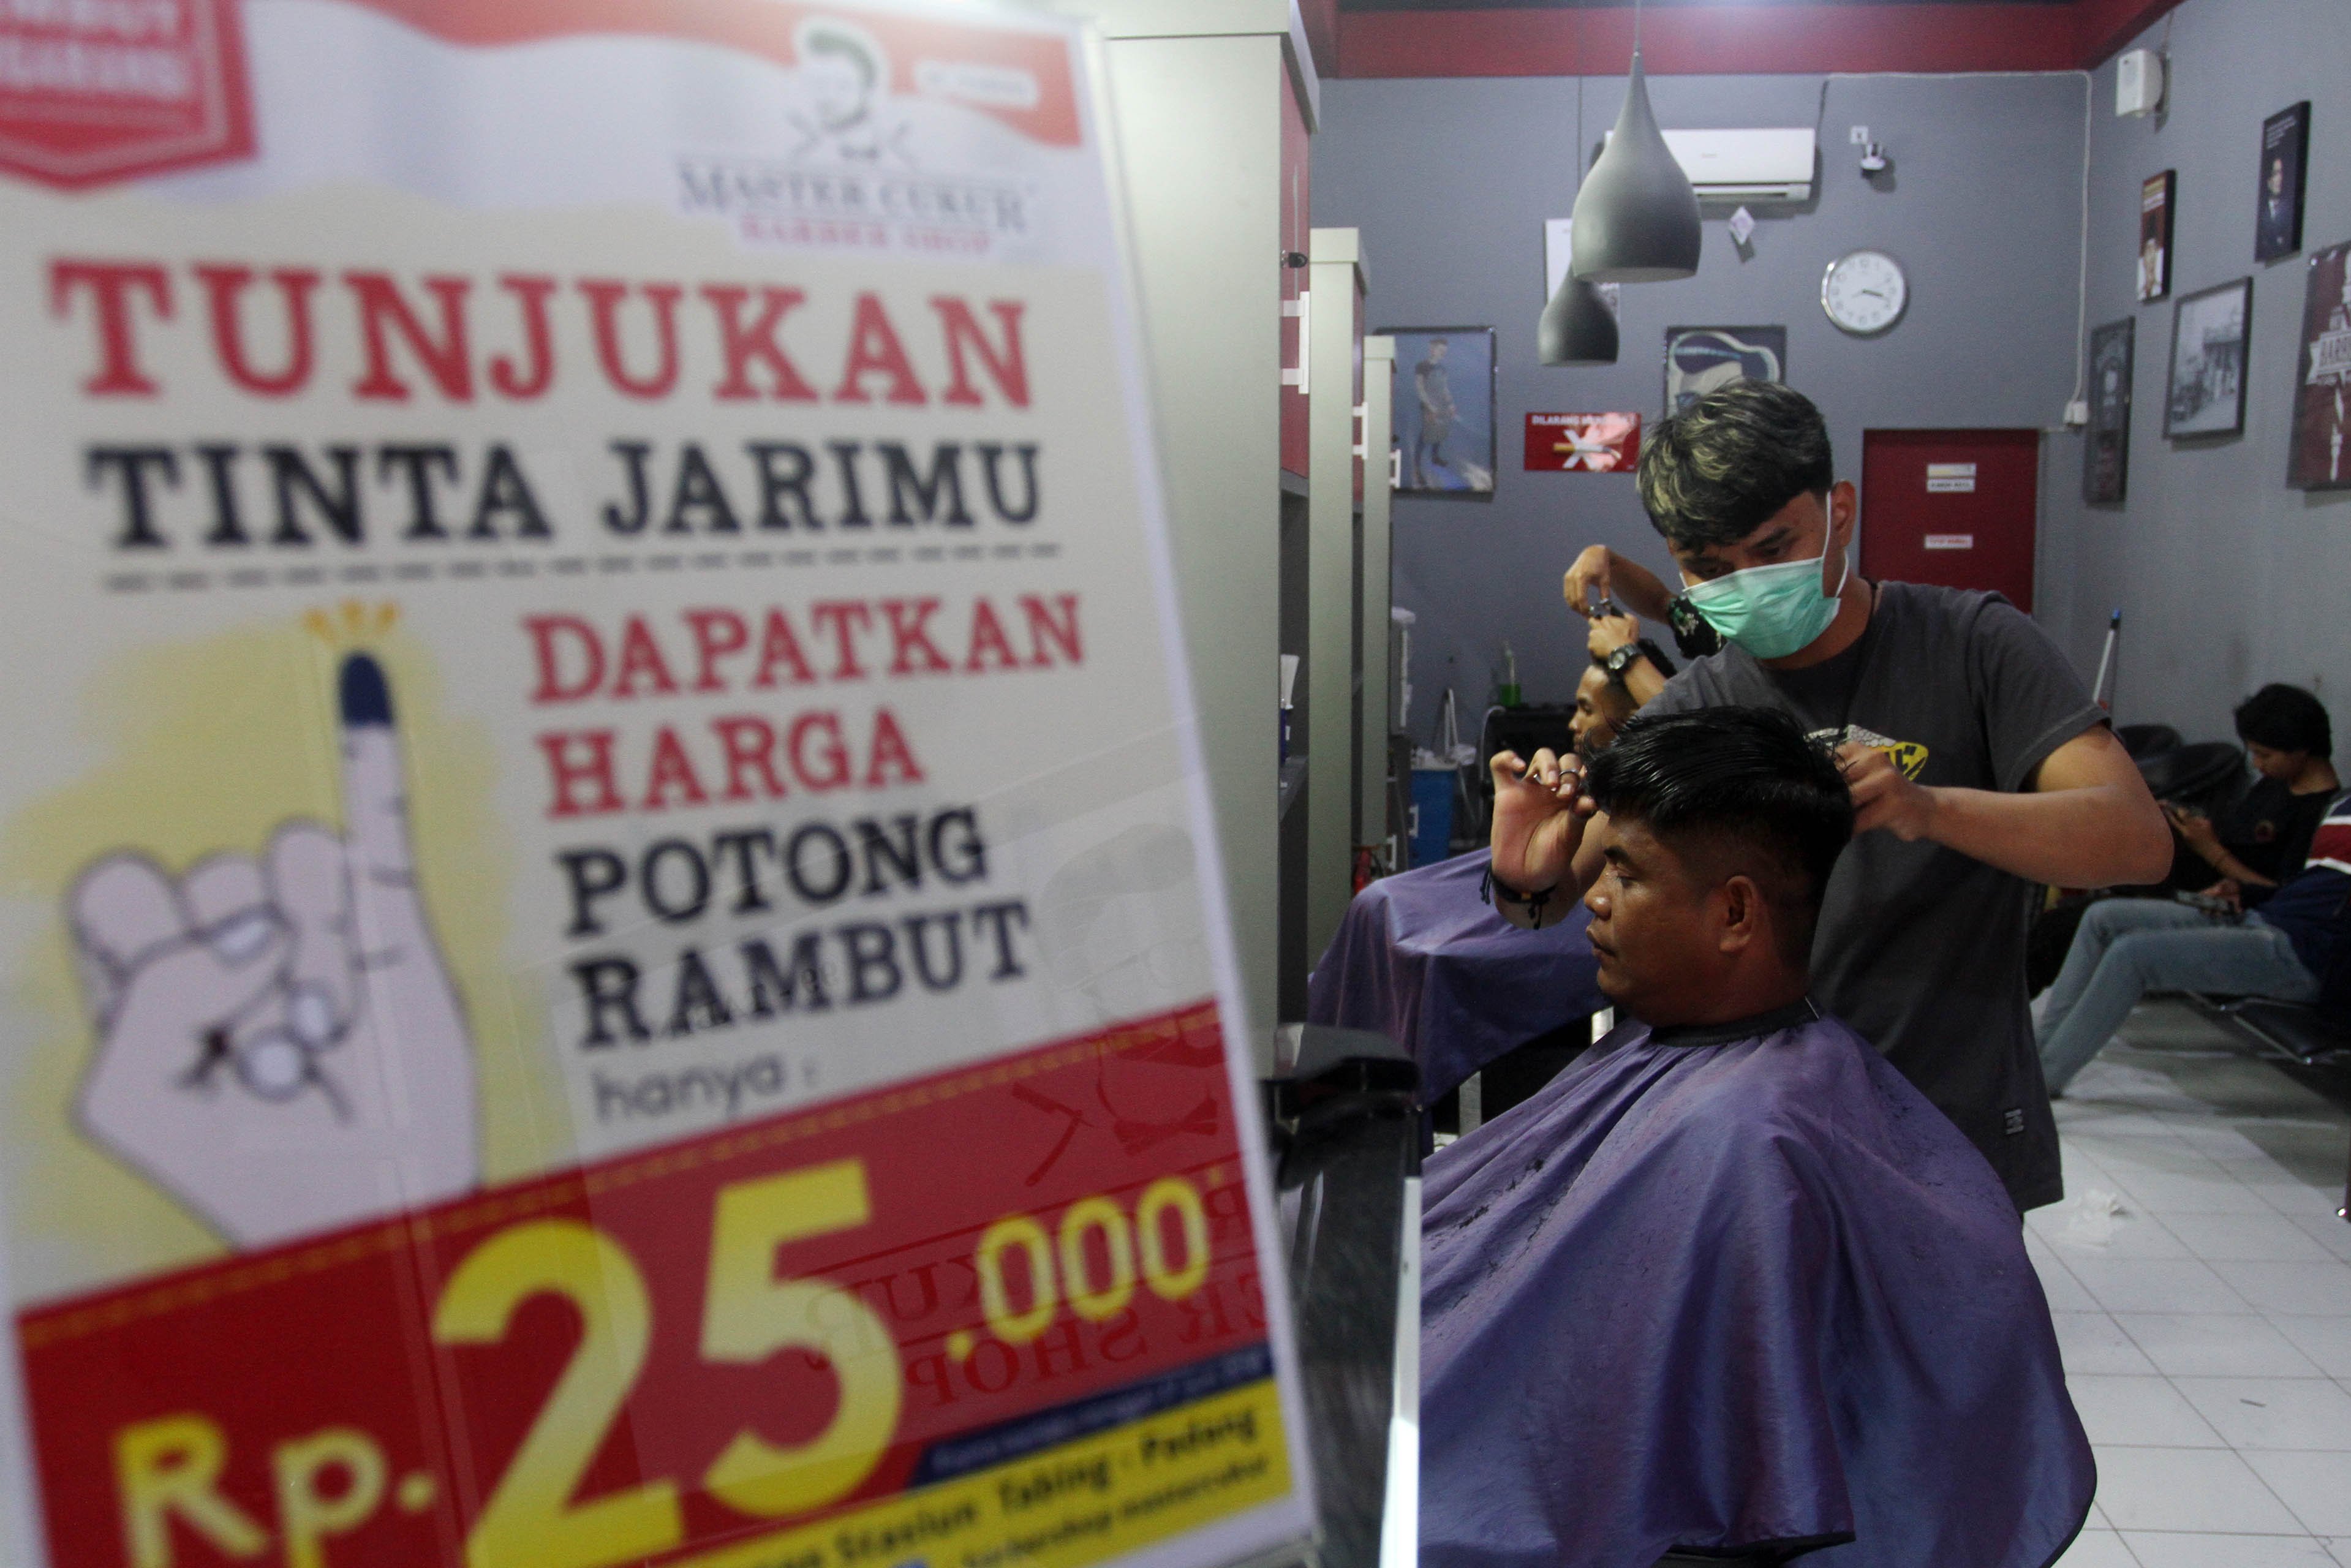 Sejumlah warga memotong rambutnya di Master Baber Shop, Padang, Sumatera Barat, Rabu (27/6). Penggelola tempat pangkas rambut ini memberikan harga spesial Rp 25.000 -harga normal Rp 35.000- pada warga yang menyalurkan hak pilihnya dengan memperlihatkan jari bertinta sebagai bukti mengikuti Pilkada Walikota Padang periode 2019-2024.